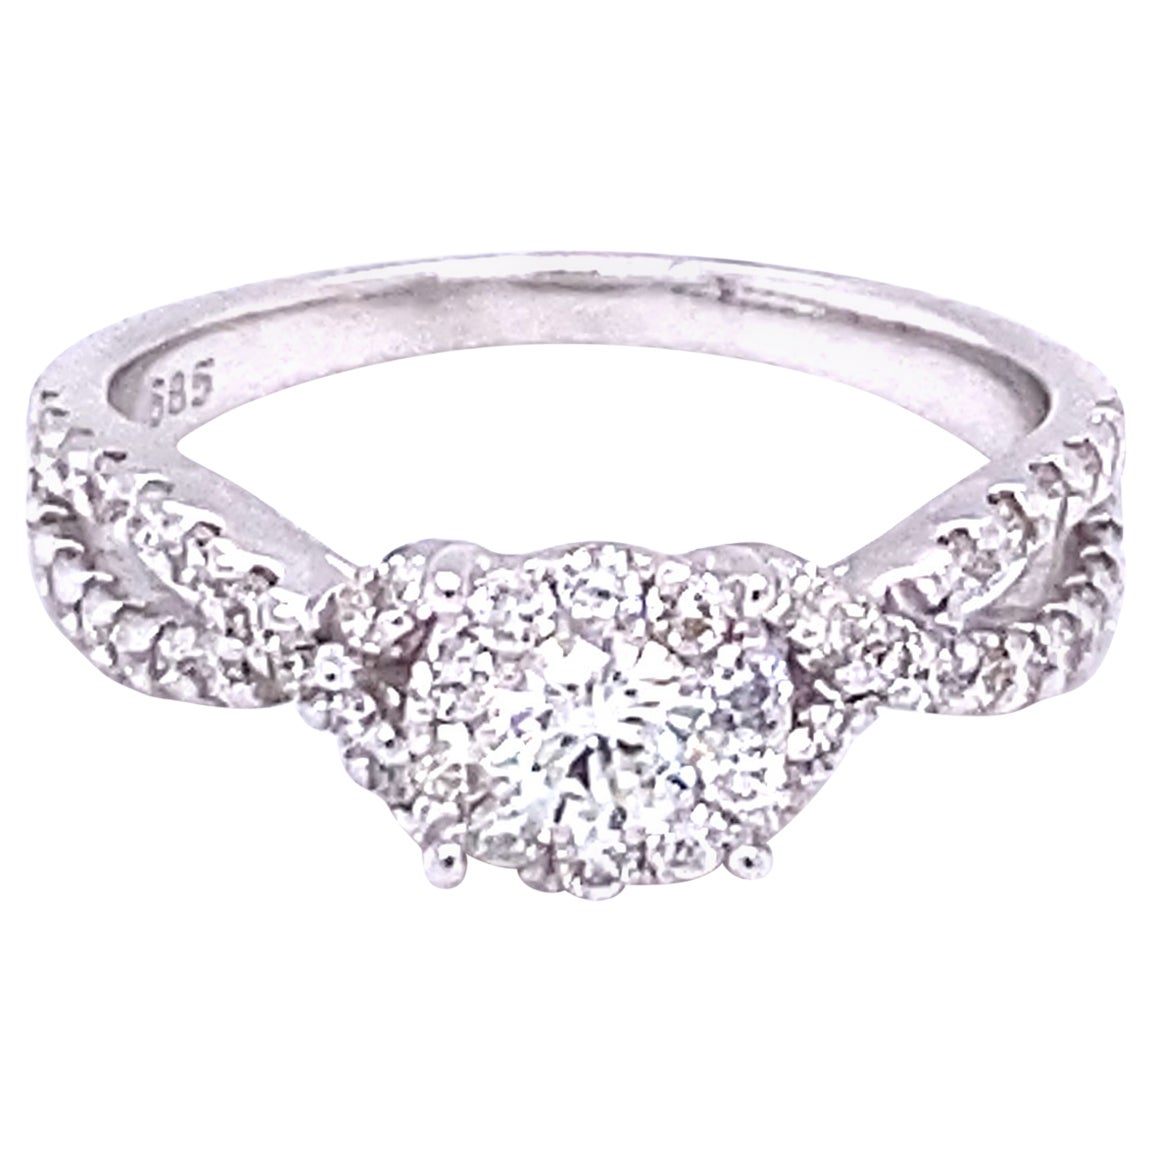 0.72 Carat Round Cut Diamond Bridal Cluster 14K White Gold Ring